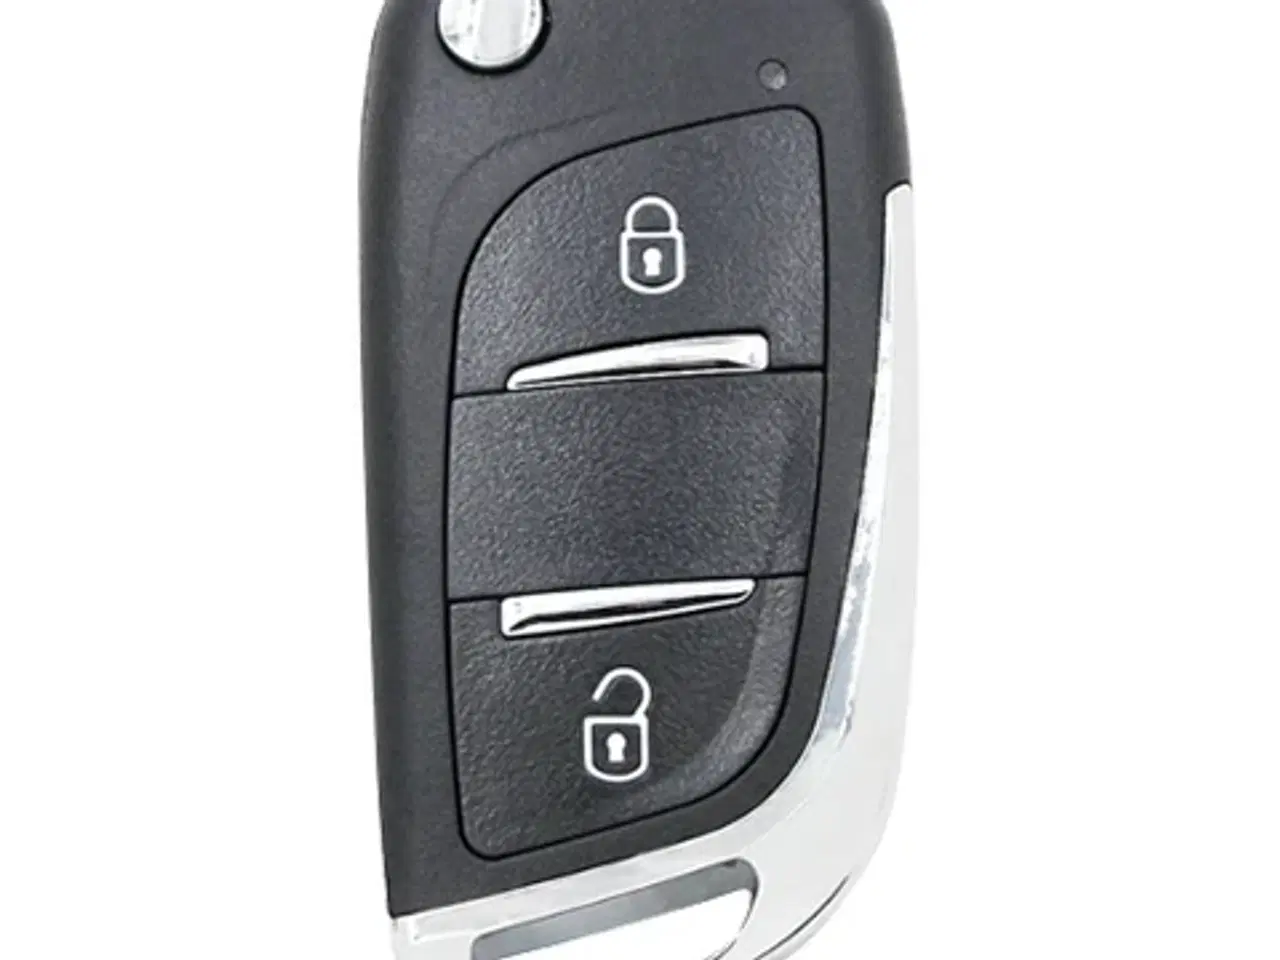 Billede 2 - Fjernbetjent folde nøgle til ældre BMW modeller som feks BMW E39 5er , BMW E46 3er , X5 mf.